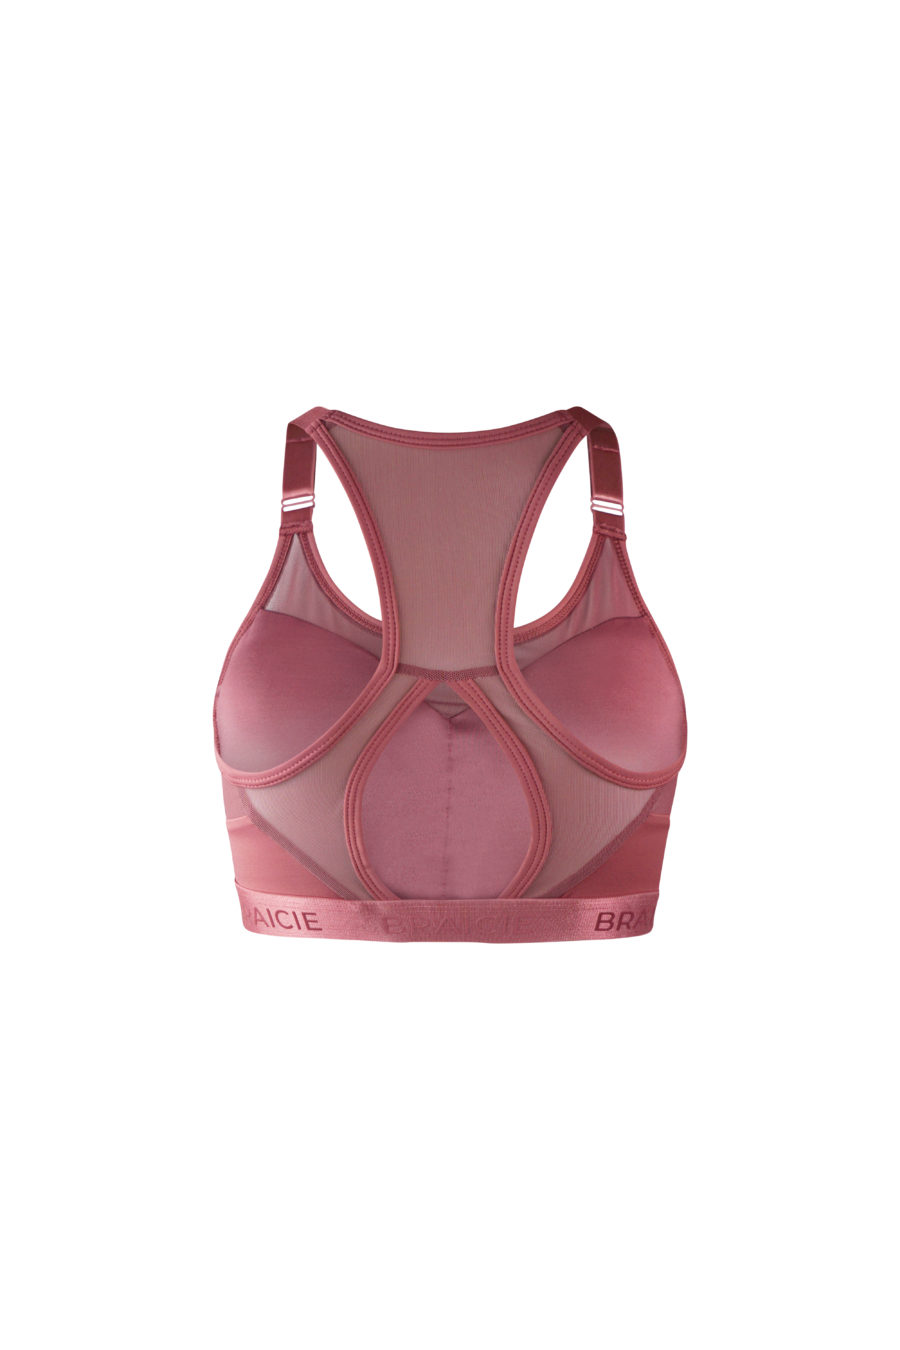 Damen Sport-BH rosa mit starkem Halt zum Laufen, Boxen, Kraftsport